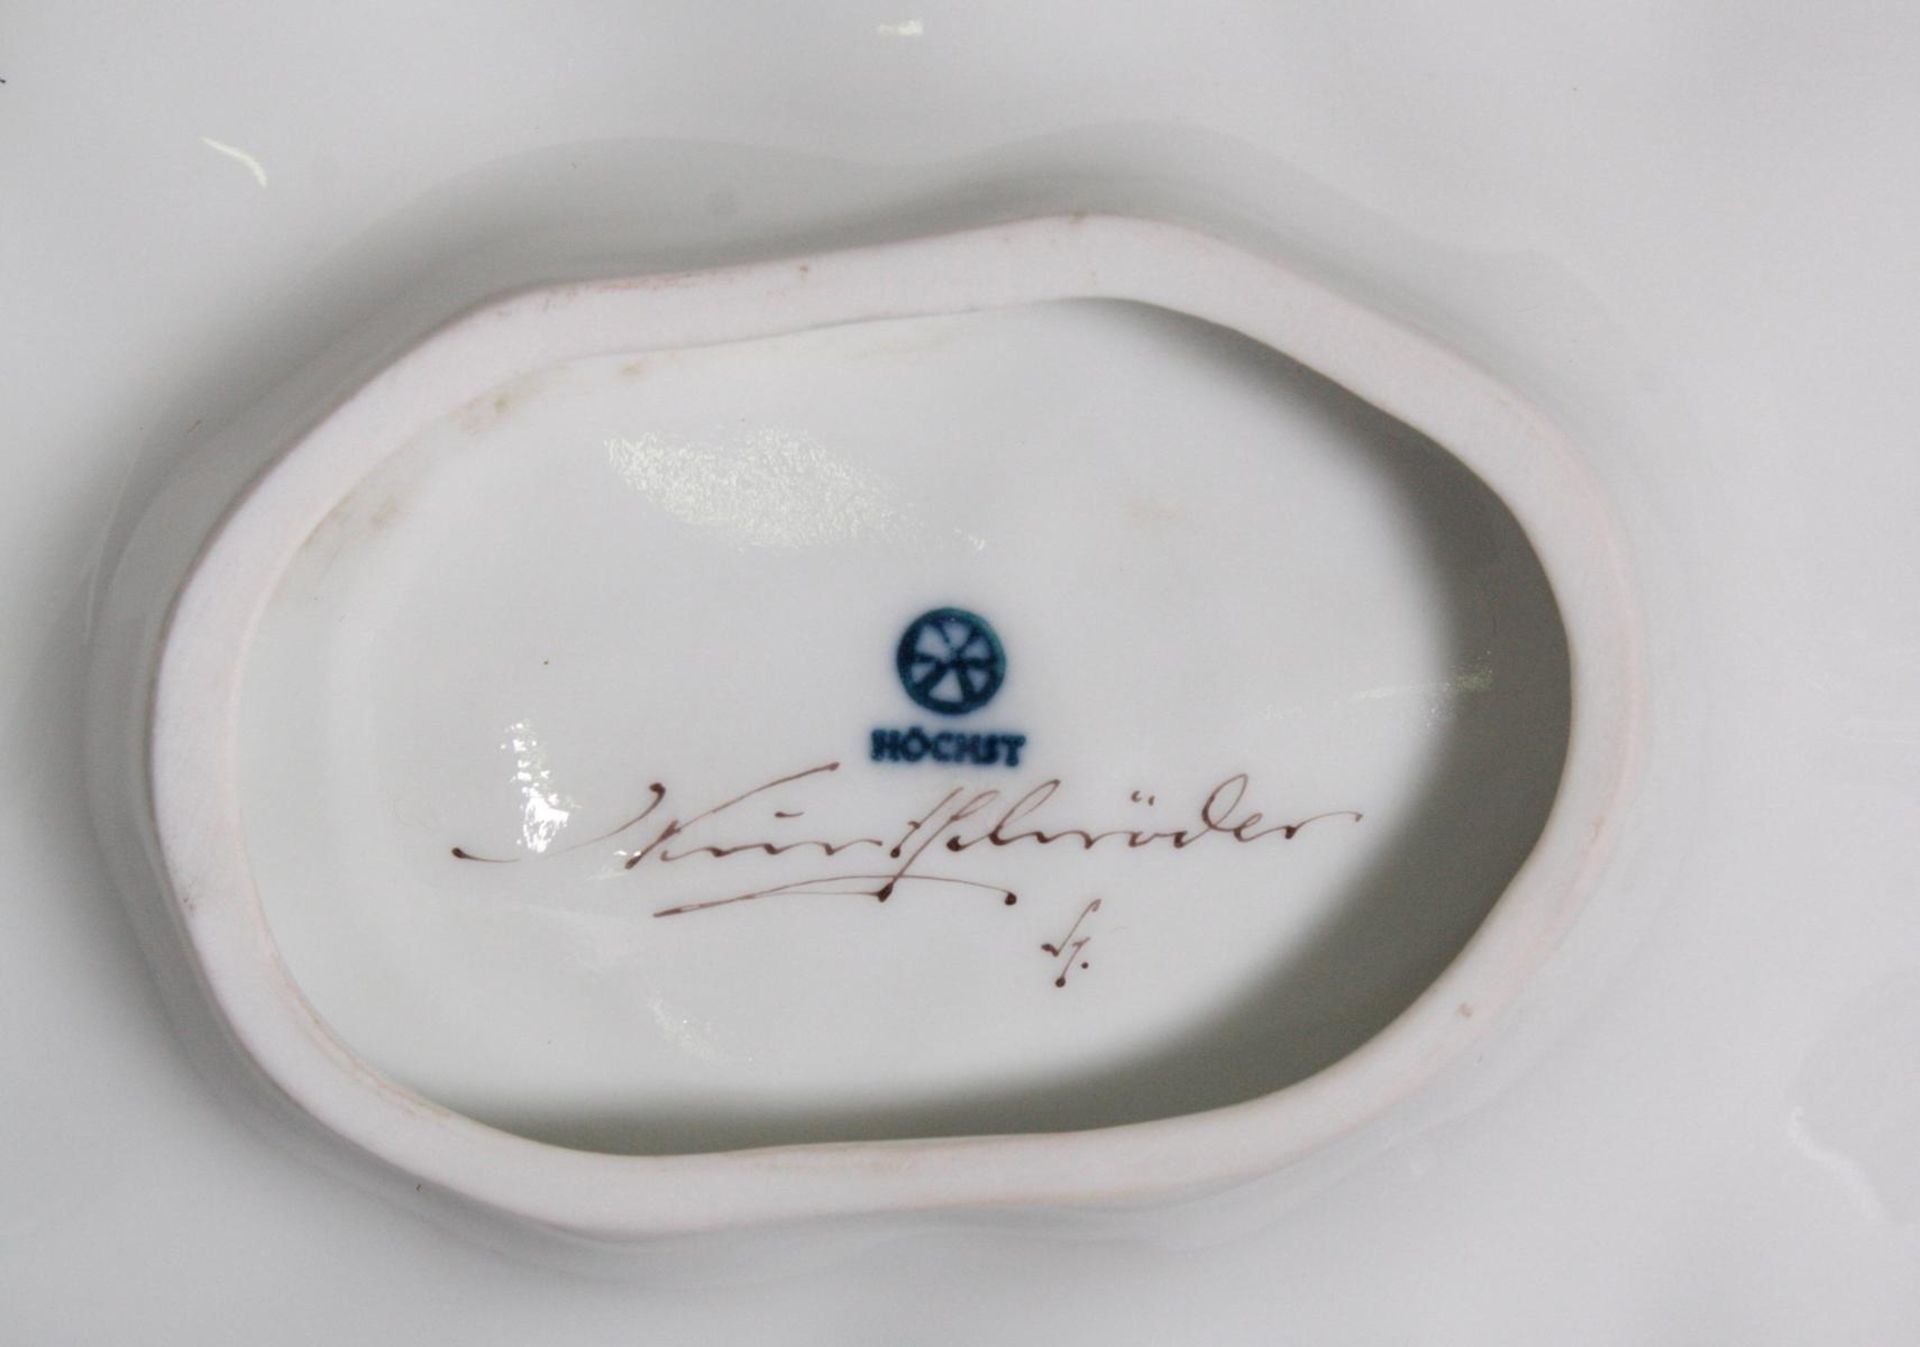 Blattschale, Höchst, signiert Kurt SchröderReliefiertes Weißporzellan, im Spiegel Vögel auf Ast in - Bild 2 aus 2